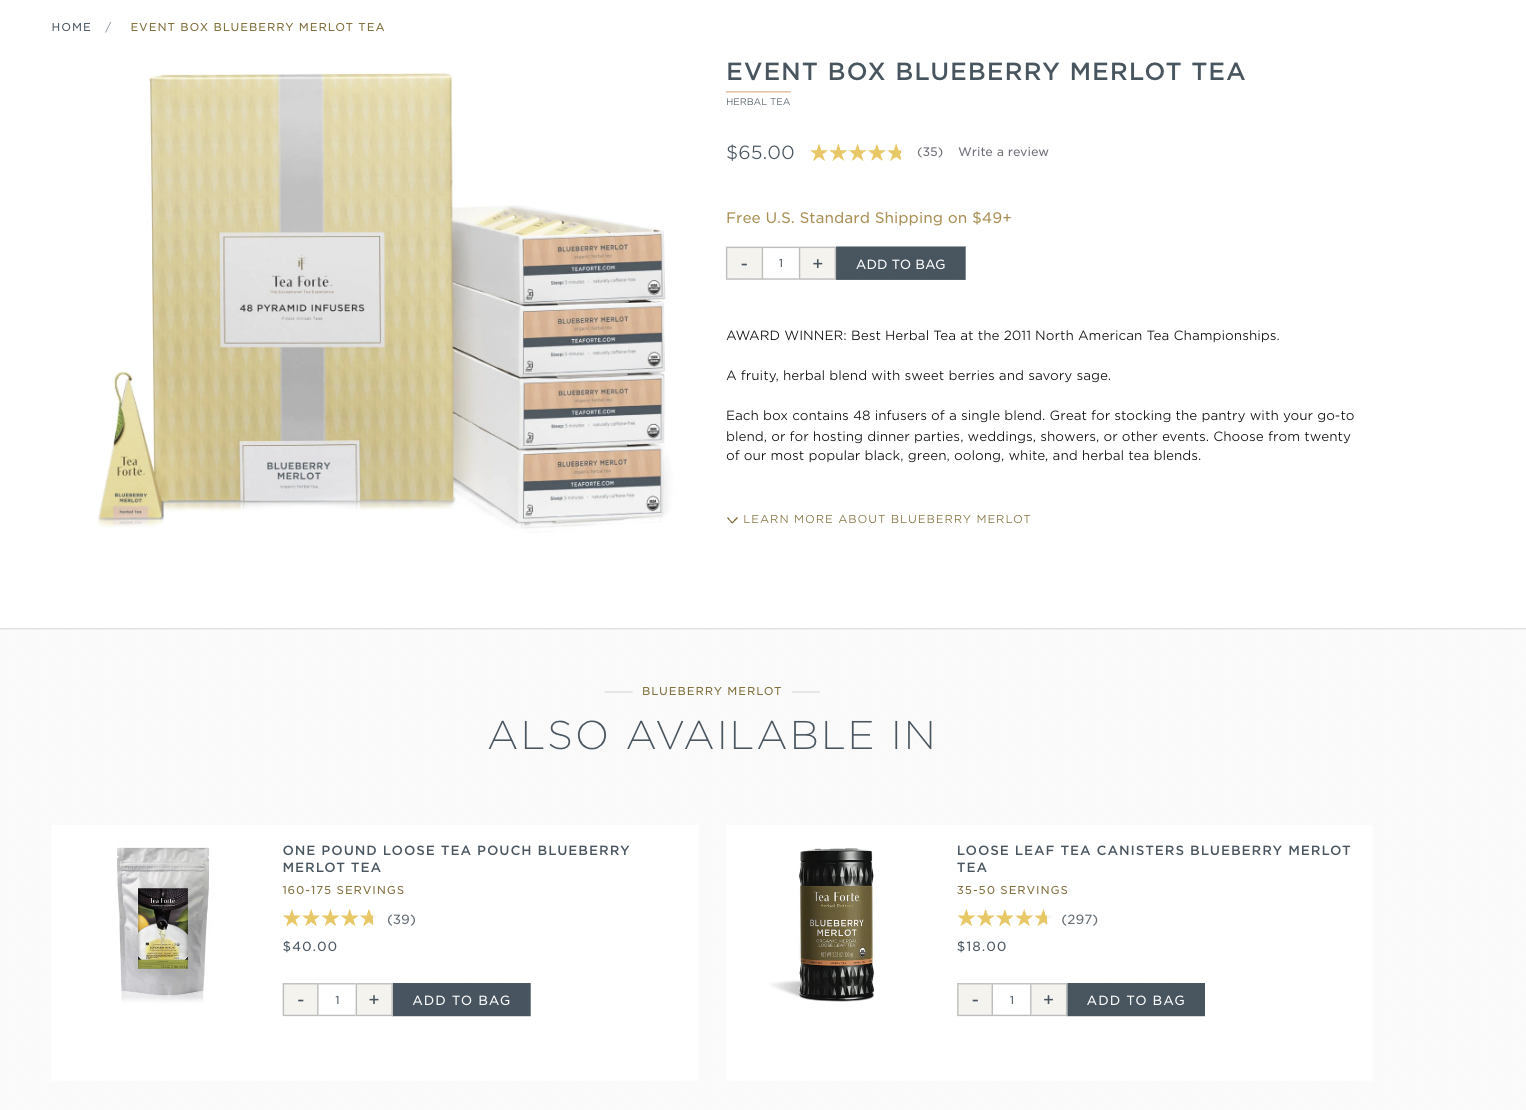 Event Box blueberry merlot tea packaging